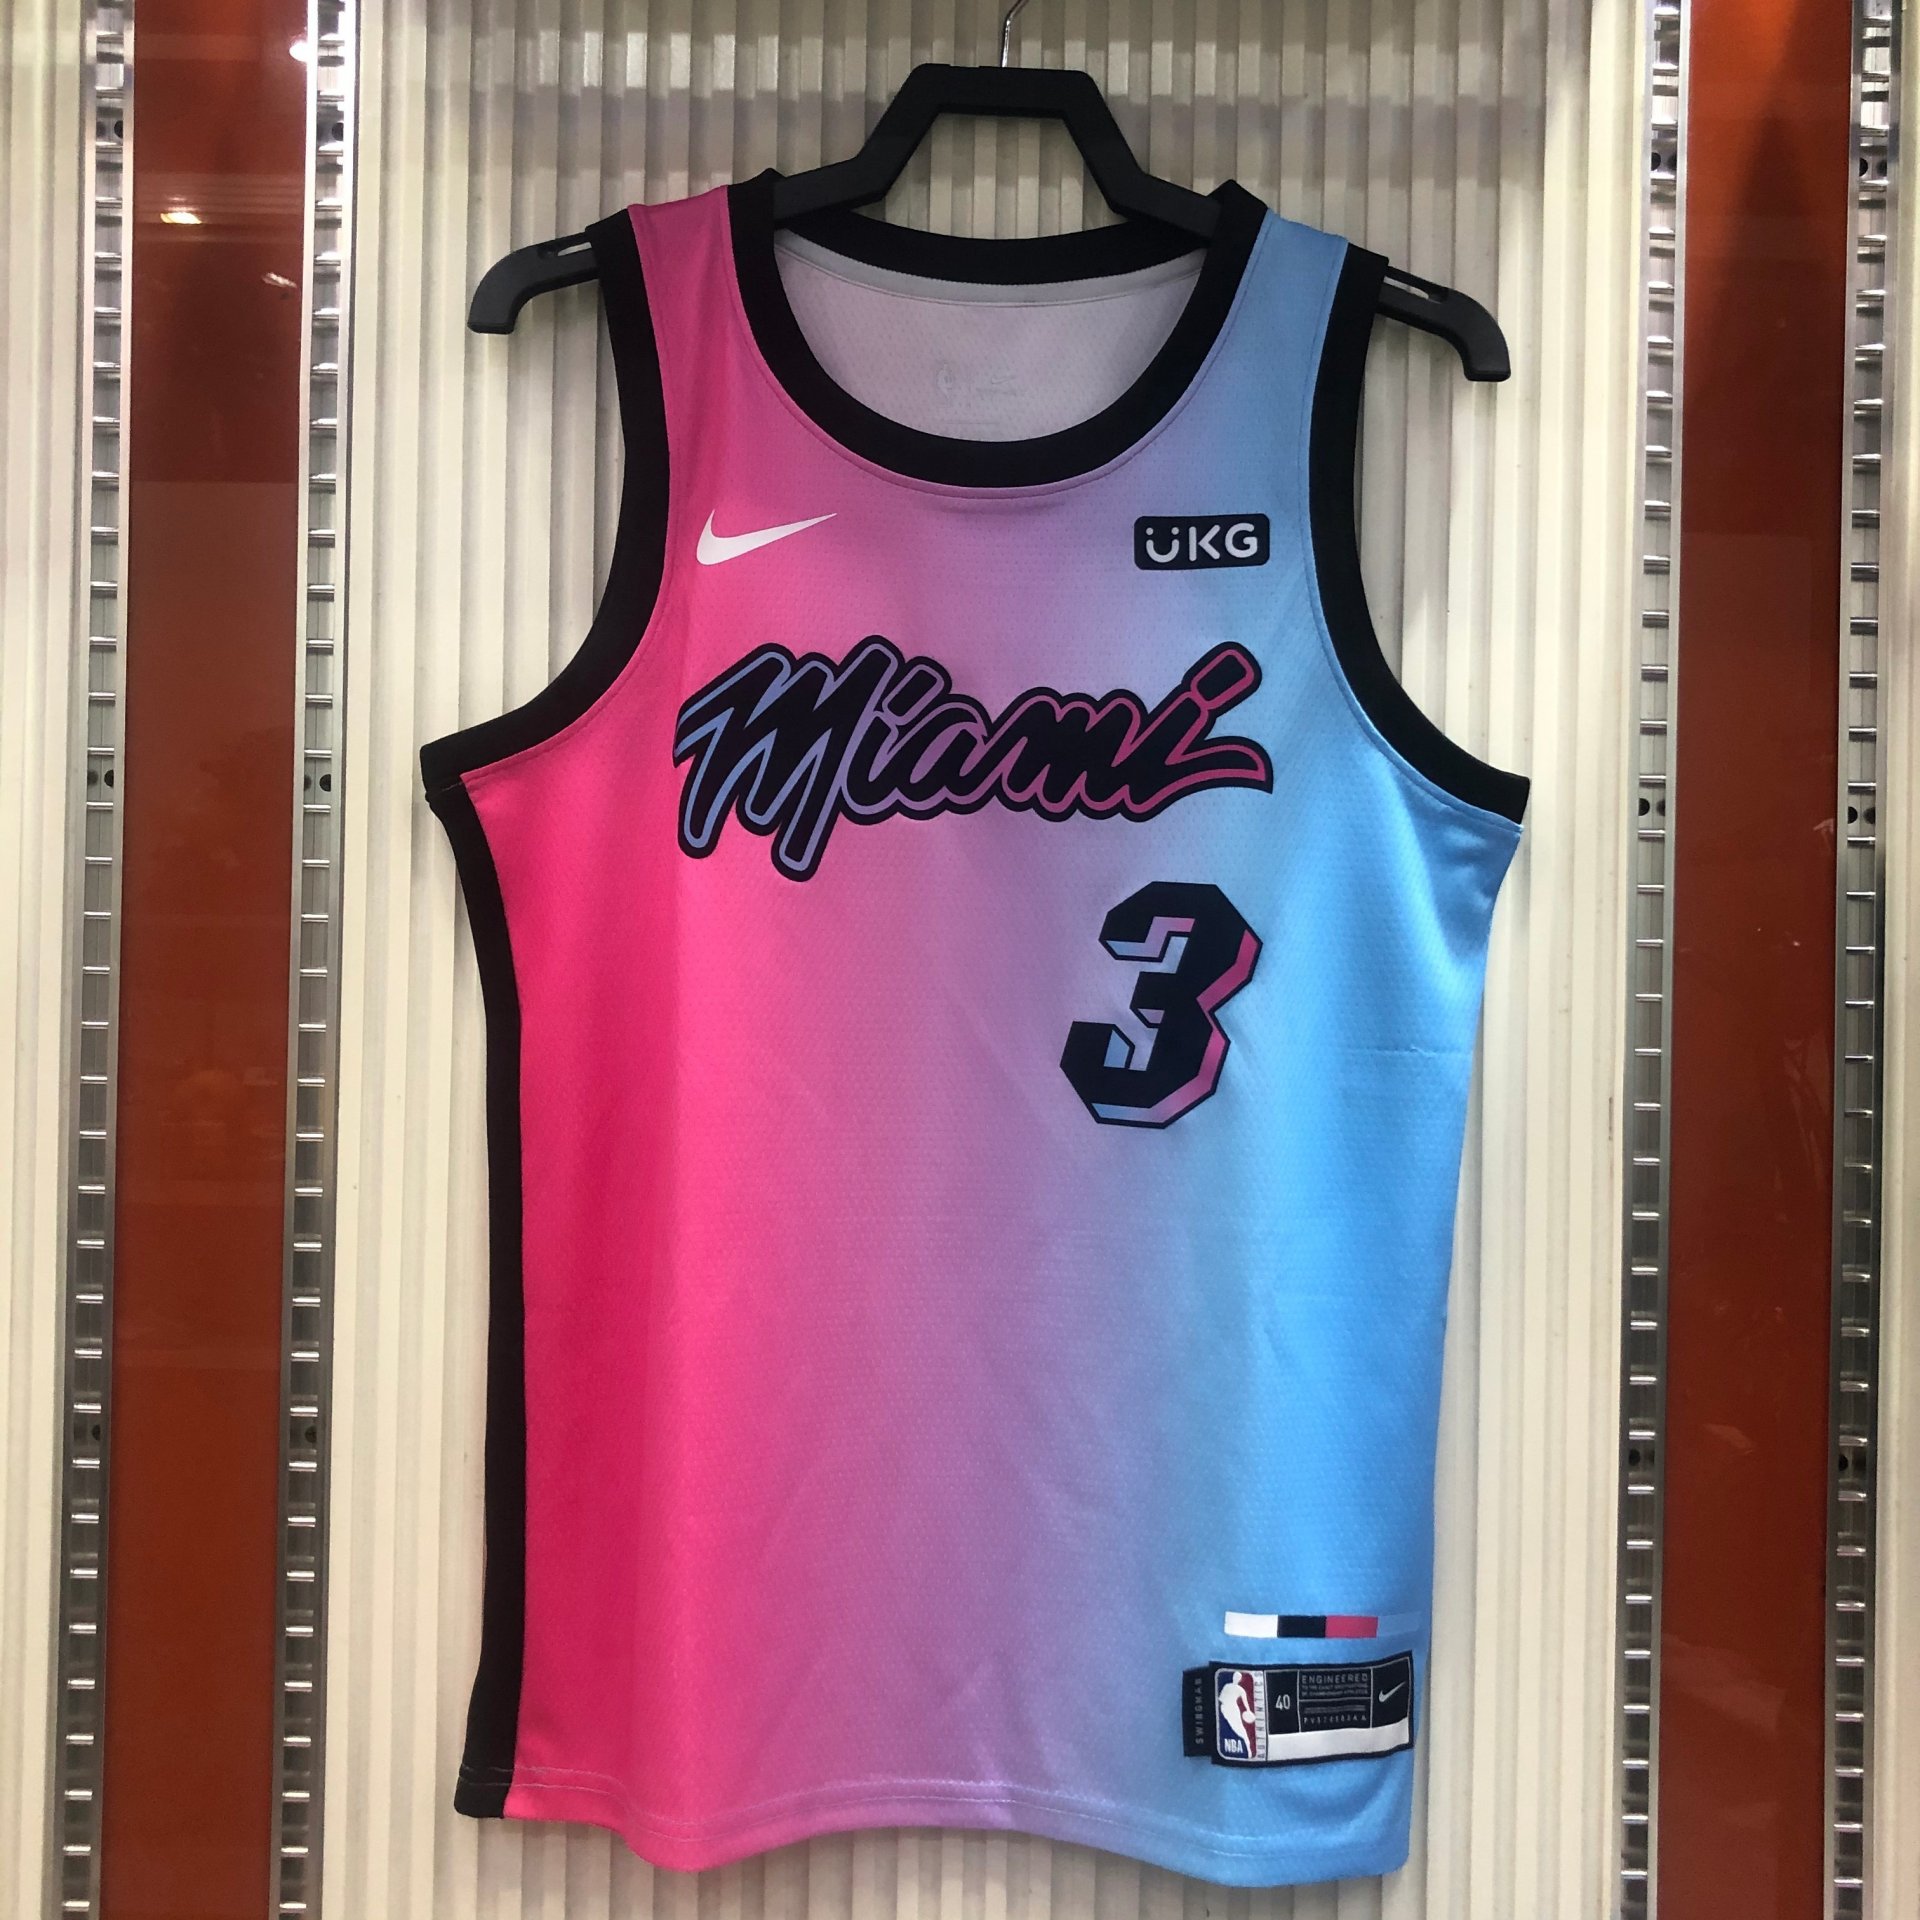 Dwyane Wade - Miami Heat *City Edition - 2020-21* #3 - JerseyAve